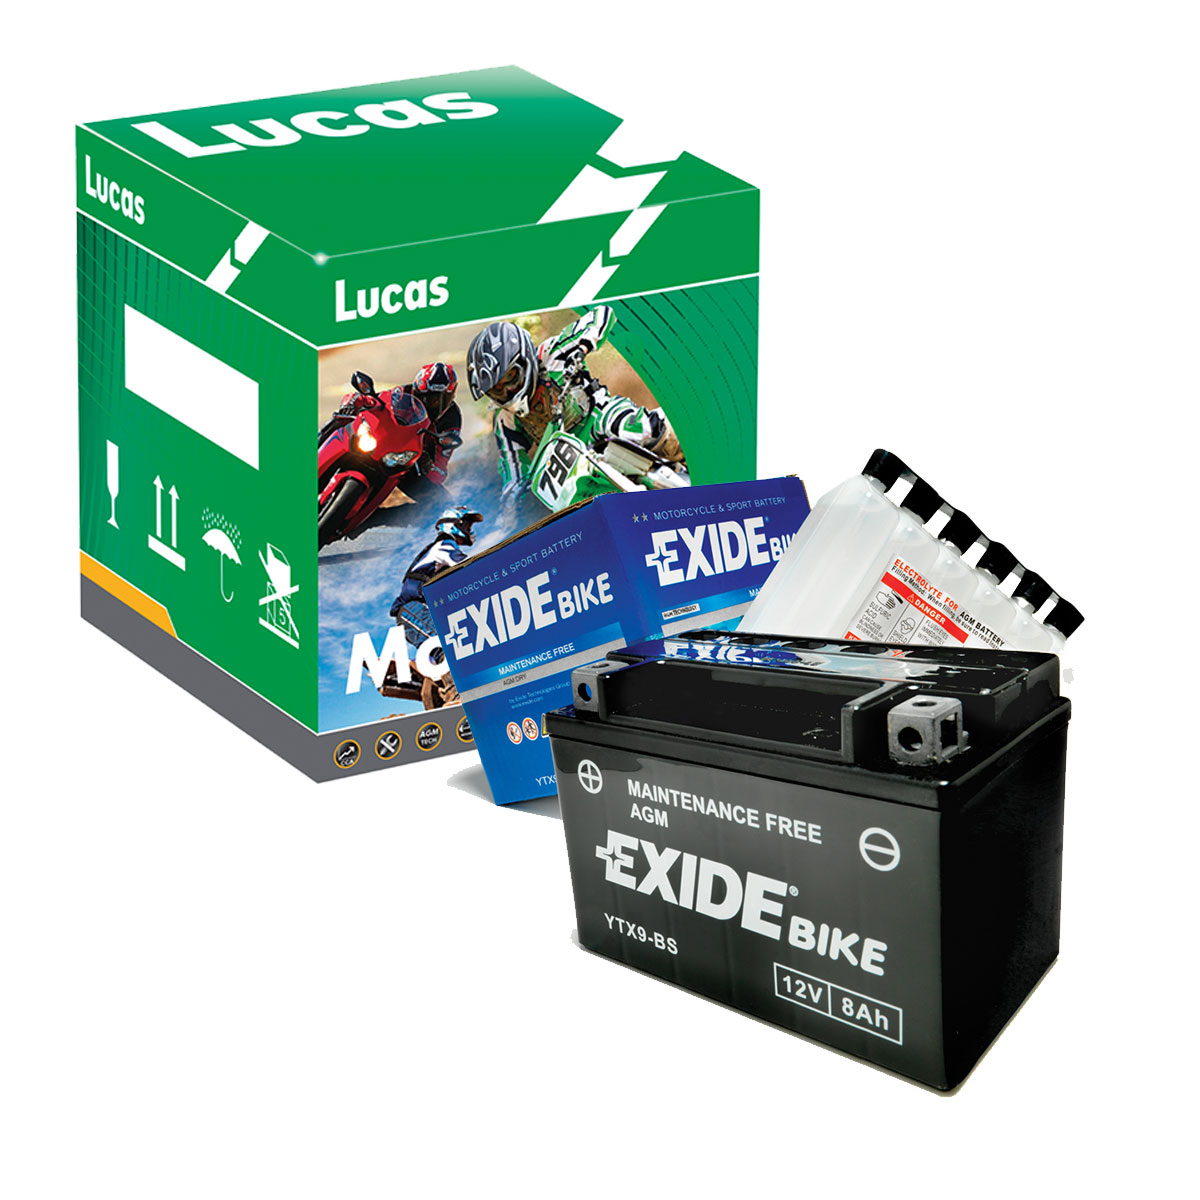 exide-lucas-mototcycle-batteries.jpg